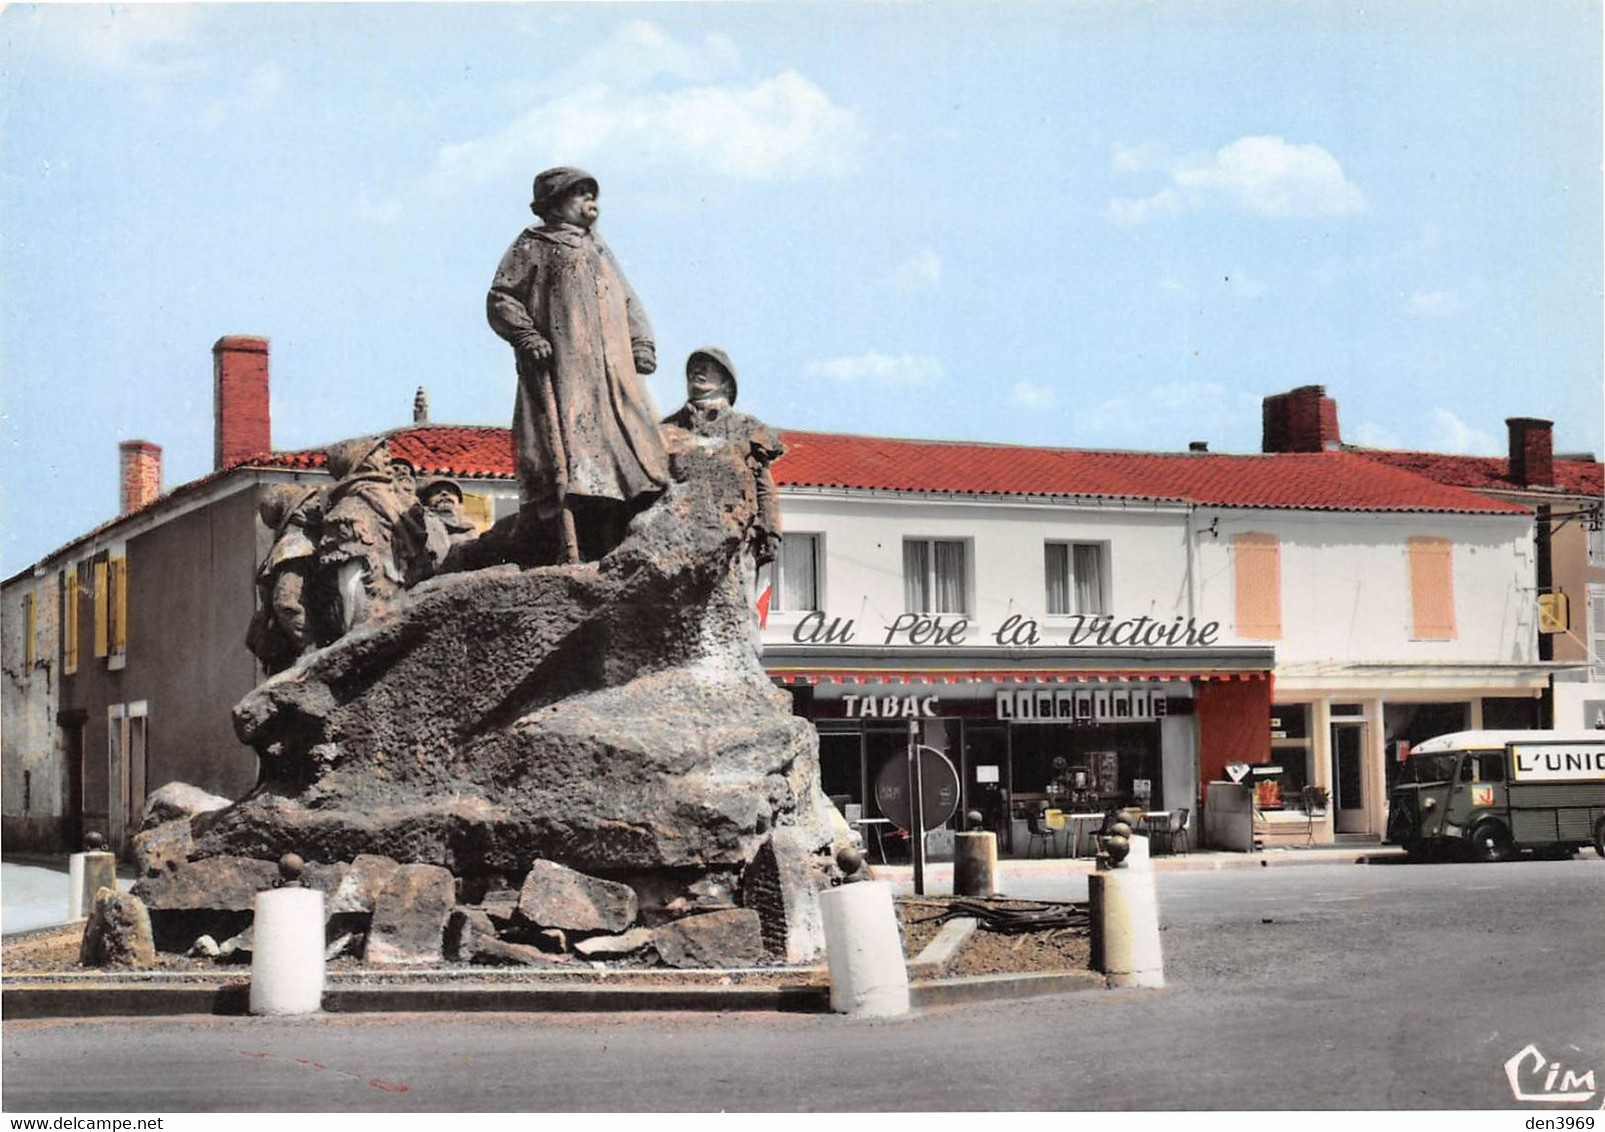 SAINTE-HERMINE - Le Monument Georges Clémenceau - Tabac-Librairie Au Père La Victoire - Fourgon L'Union - Sainte Hermine